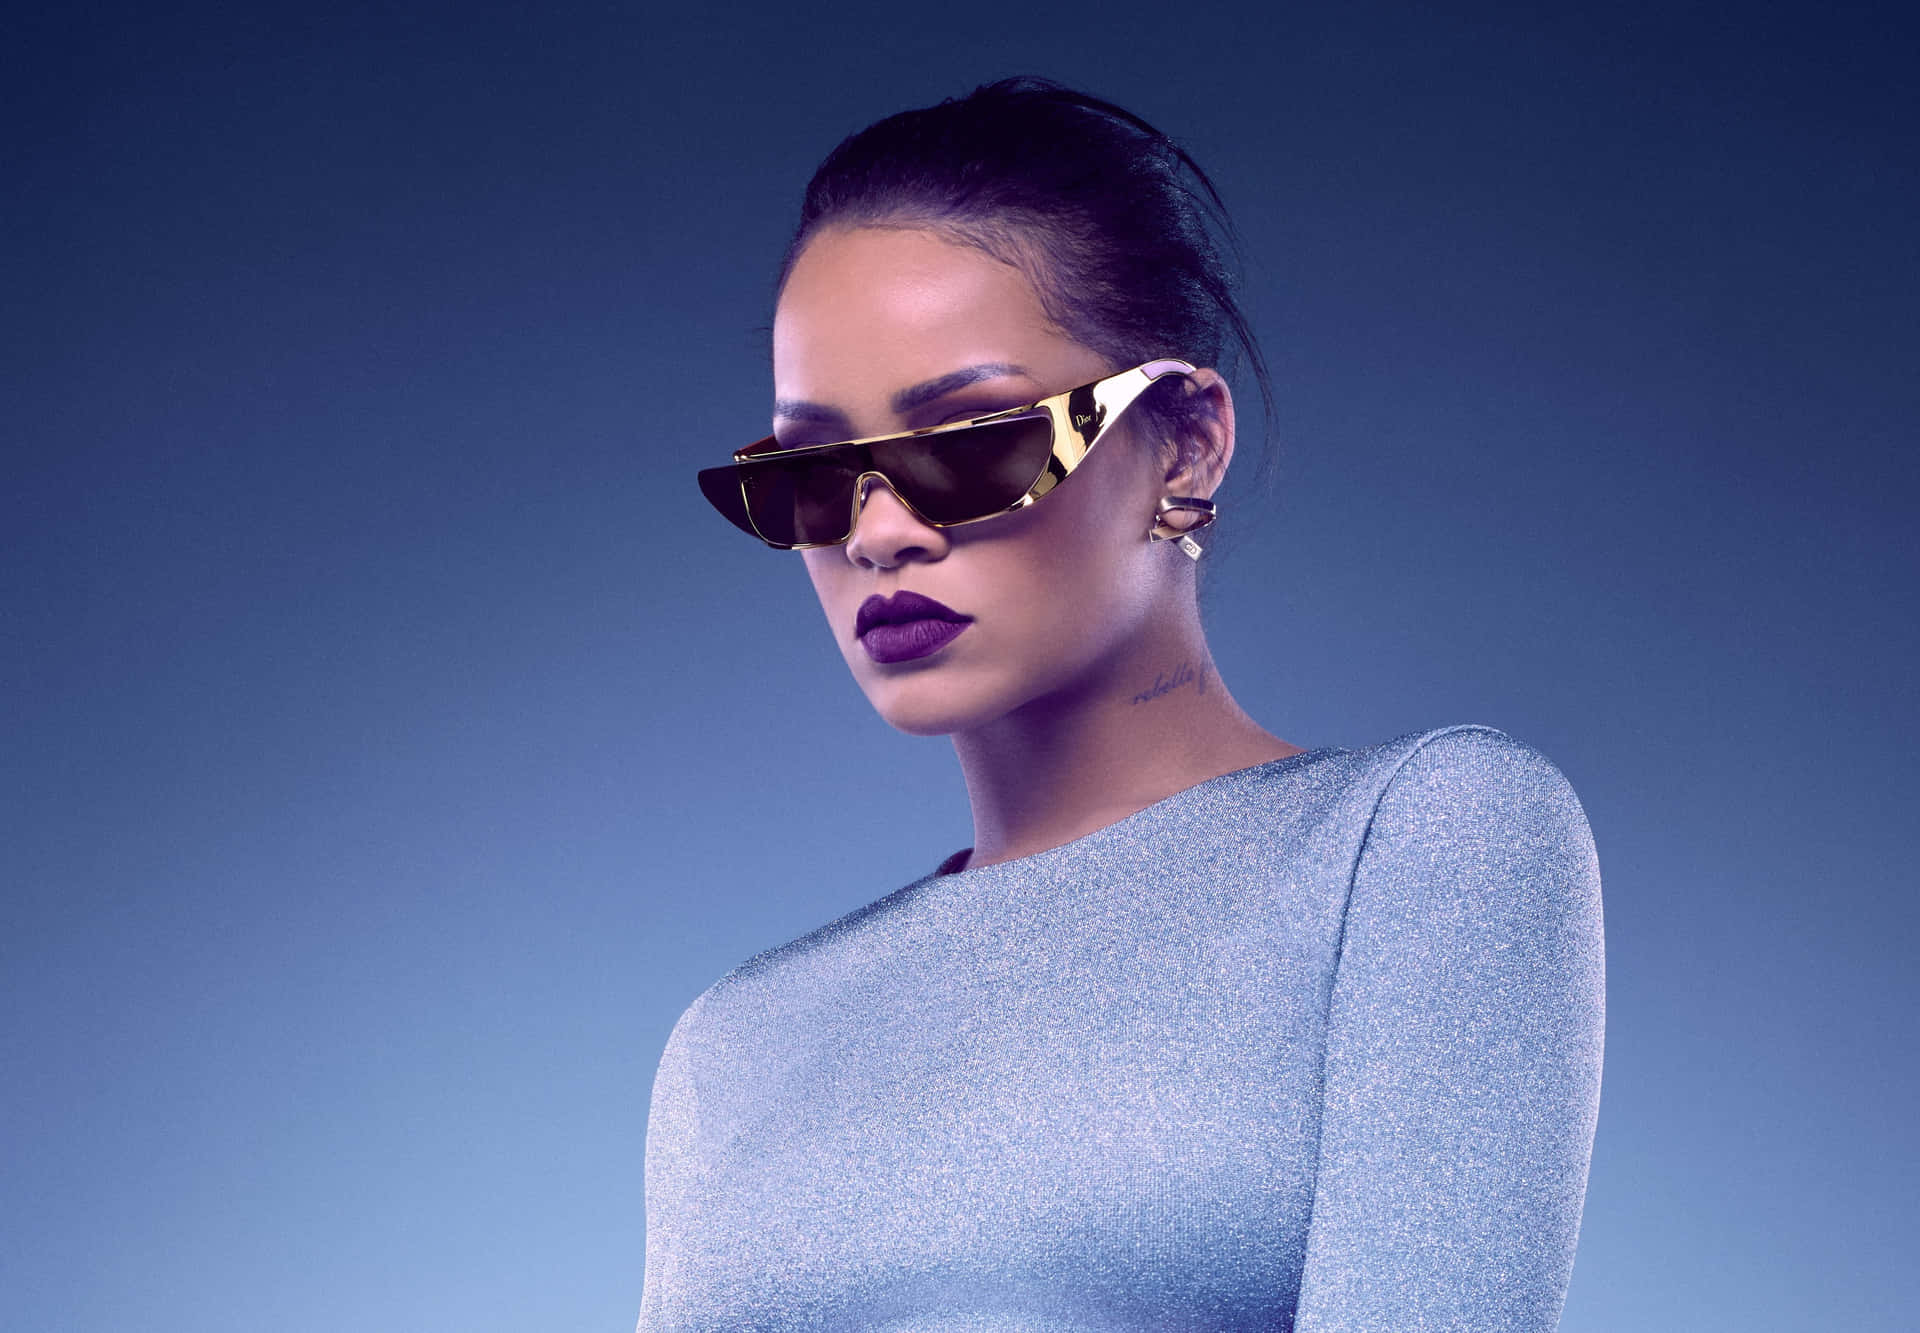 Rihannamostra Il Suo Glamour E Stile.